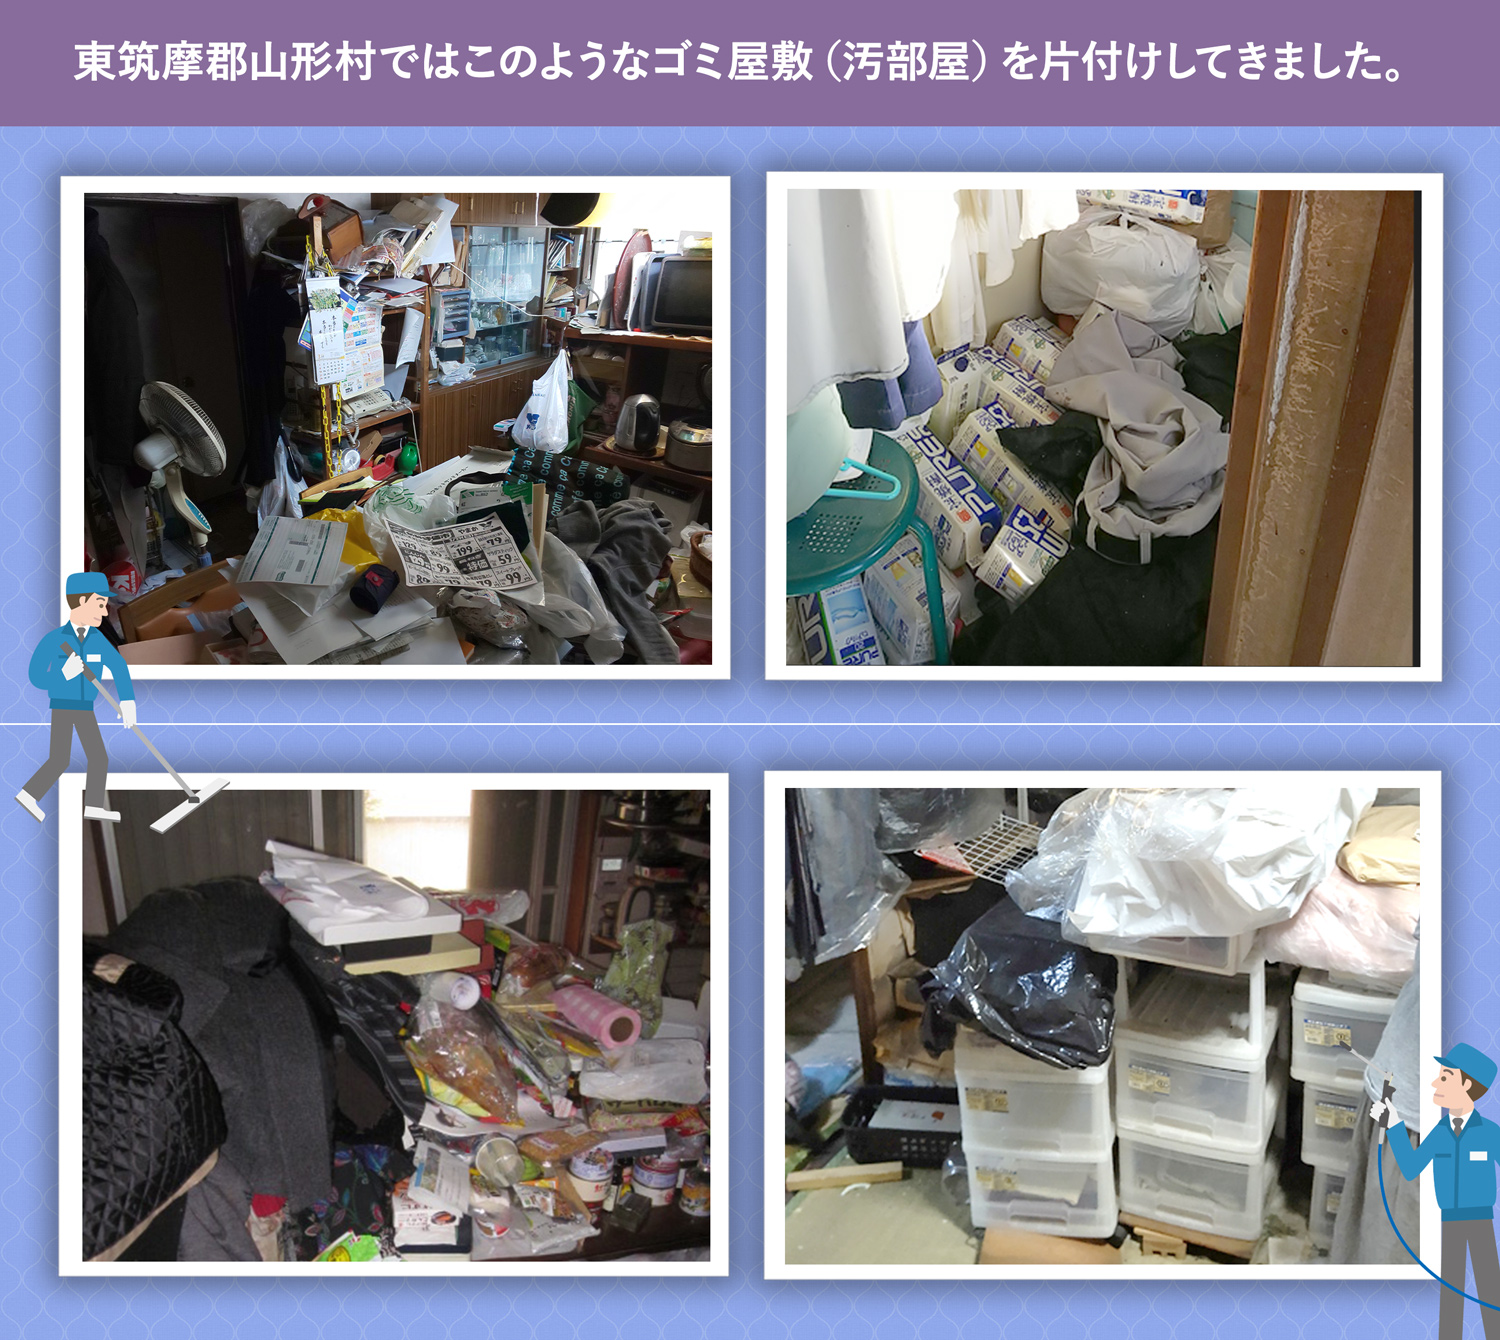 東筑摩郡山形村で行ったで行ったごみ屋敷・汚部屋の片付けの一例